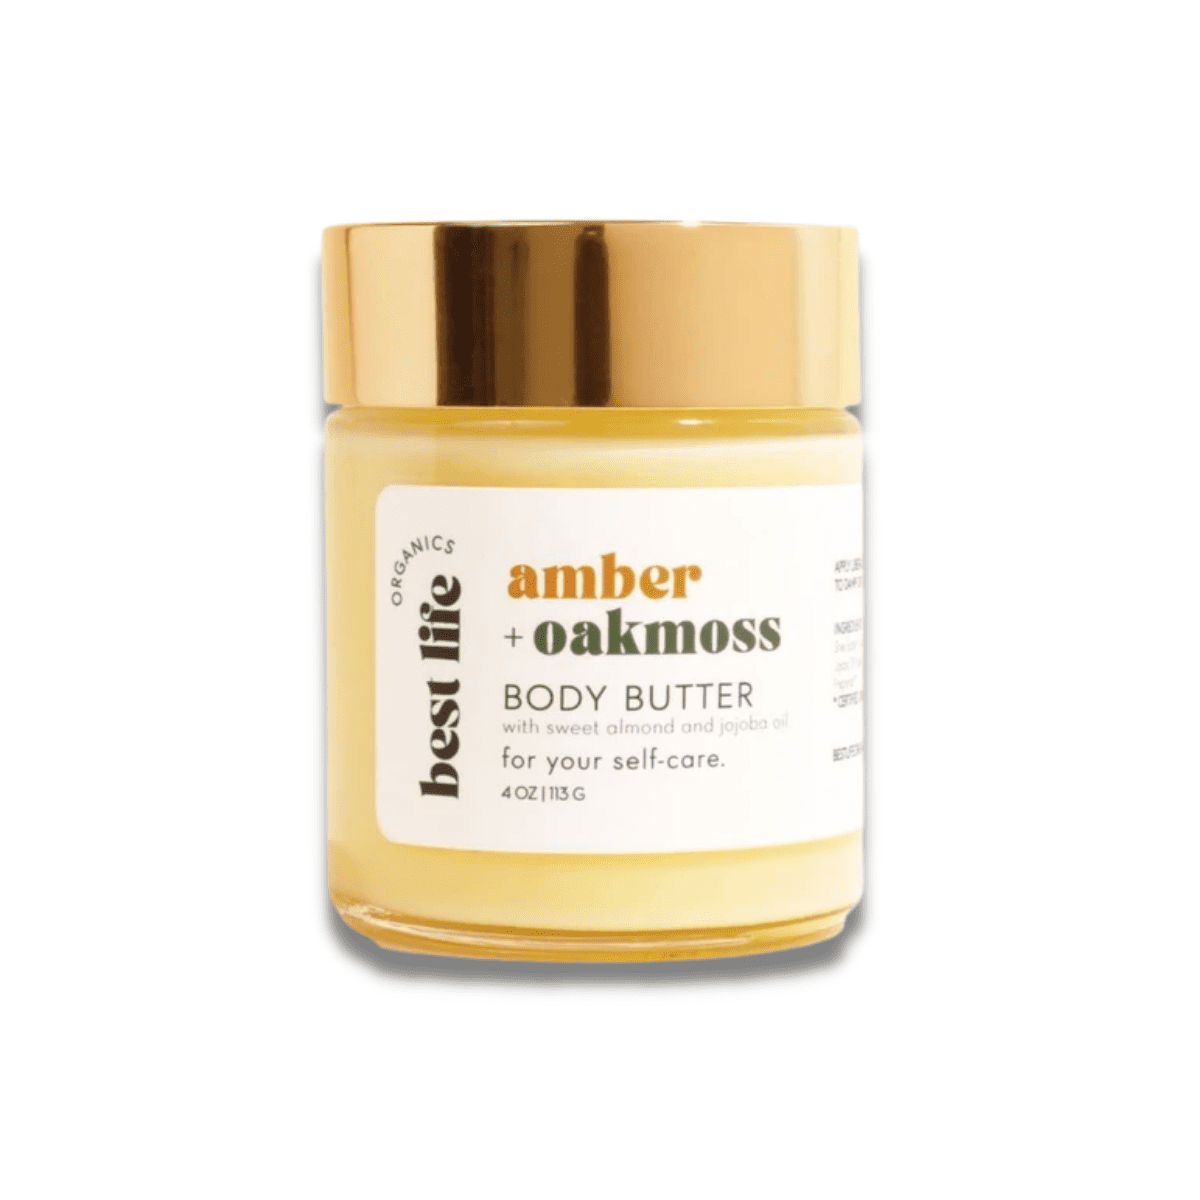 Amber + Oakmoss Body Butter